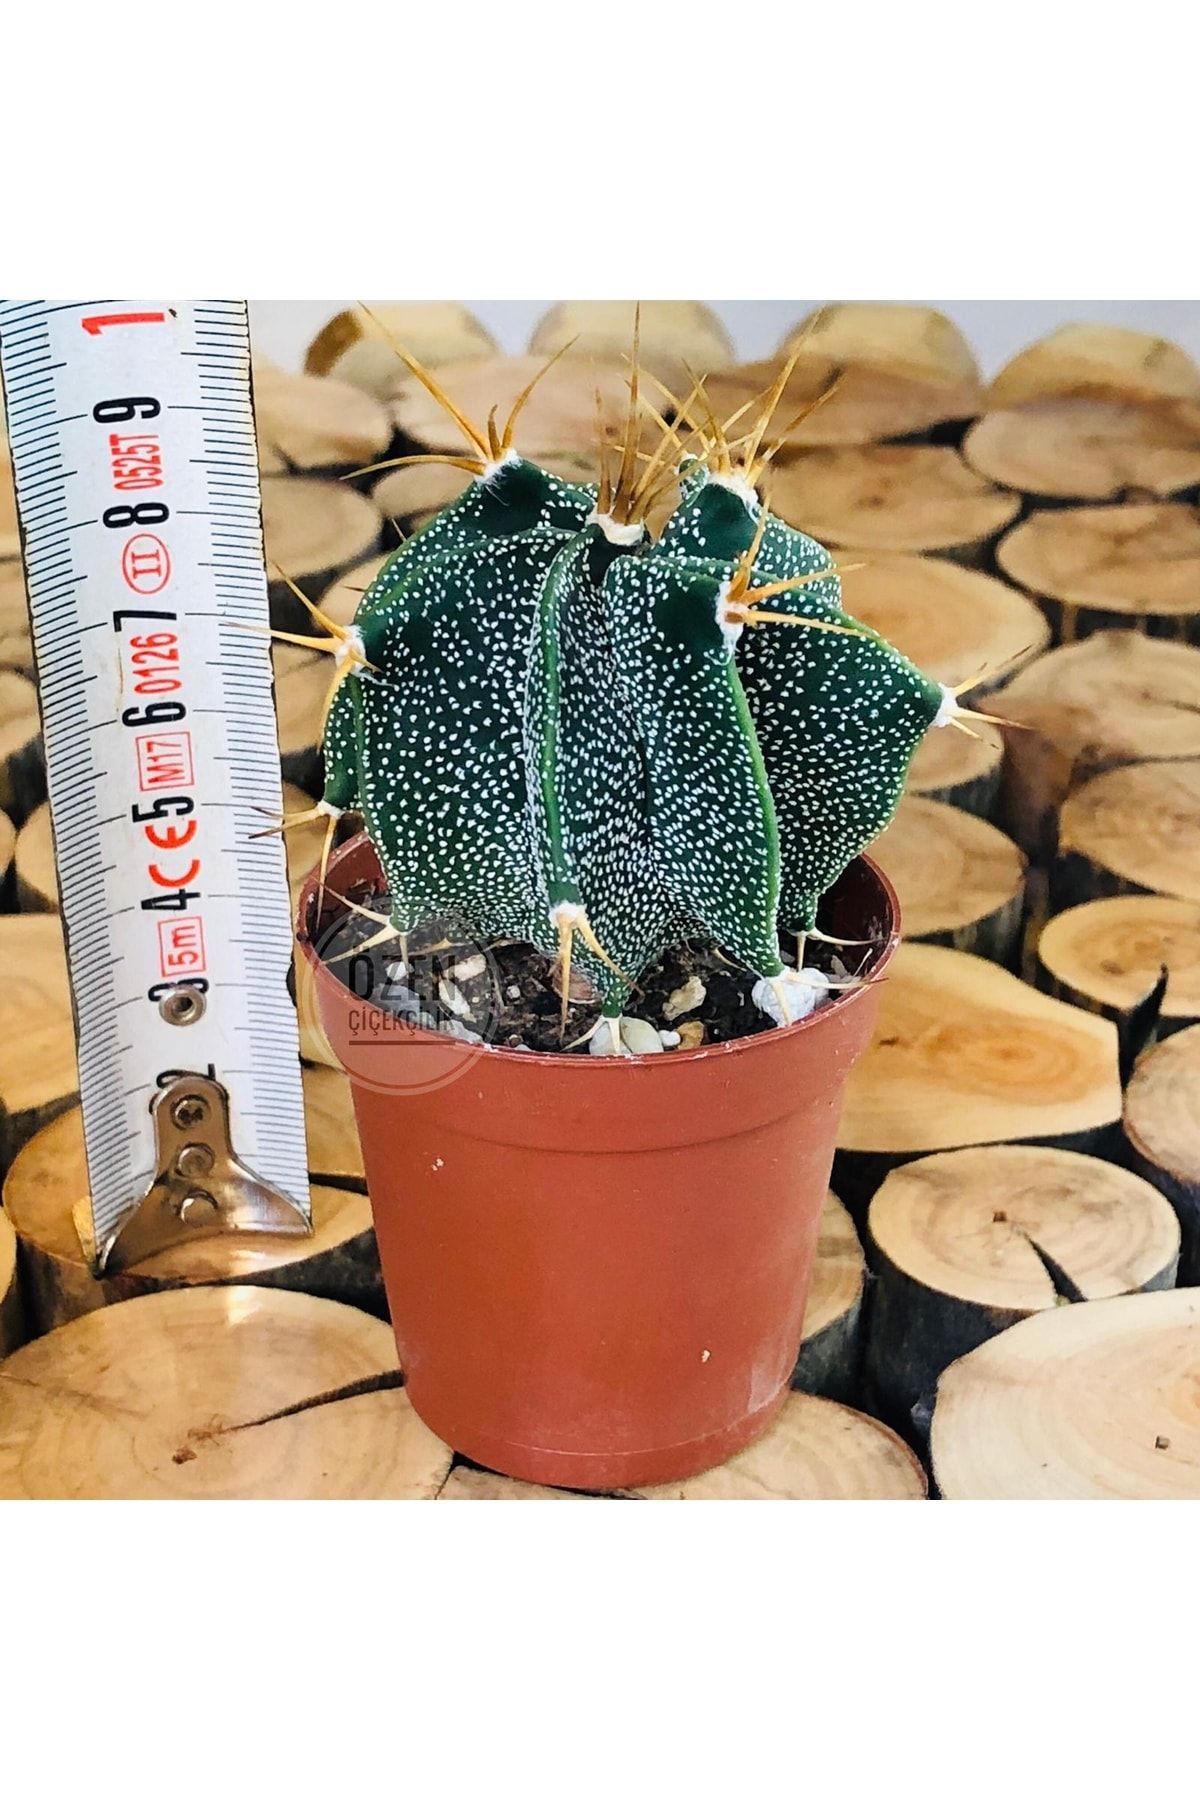 Özen Çiçekçilik Astrophytum Capricorne Cactus Beyaz Benek Döner Gövde Kaktüs